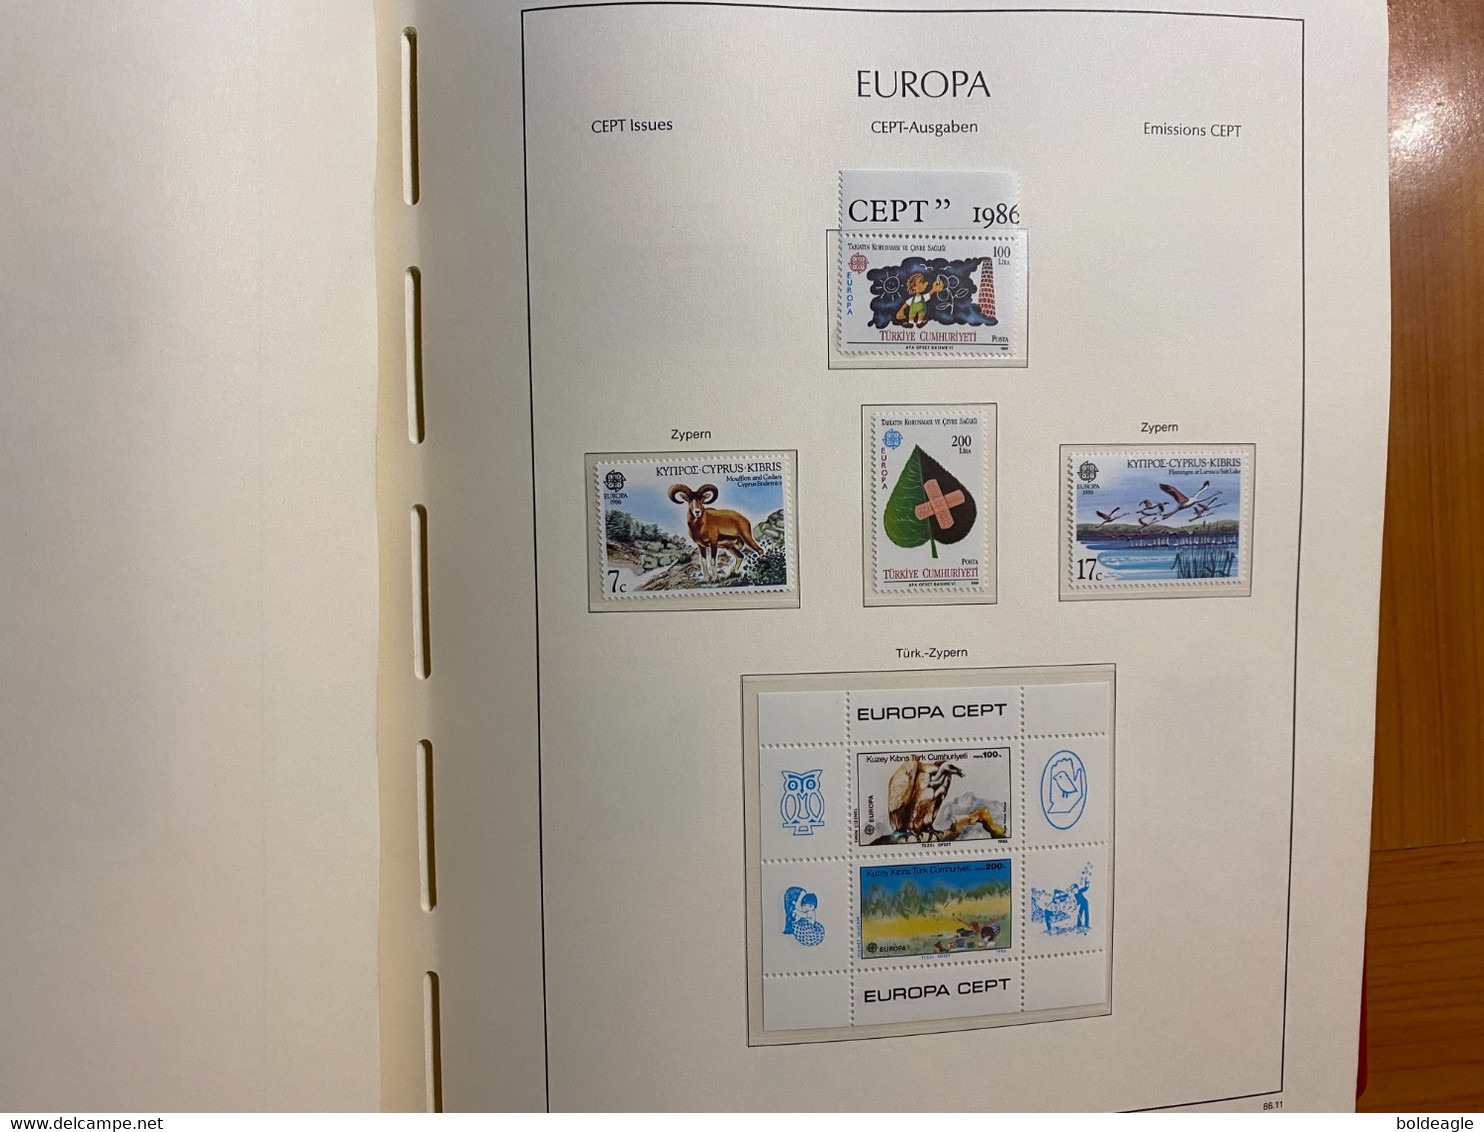 Europa - année complète 1986. - 73 valeurs et 5 blocs - neuf sans charnière LUXE